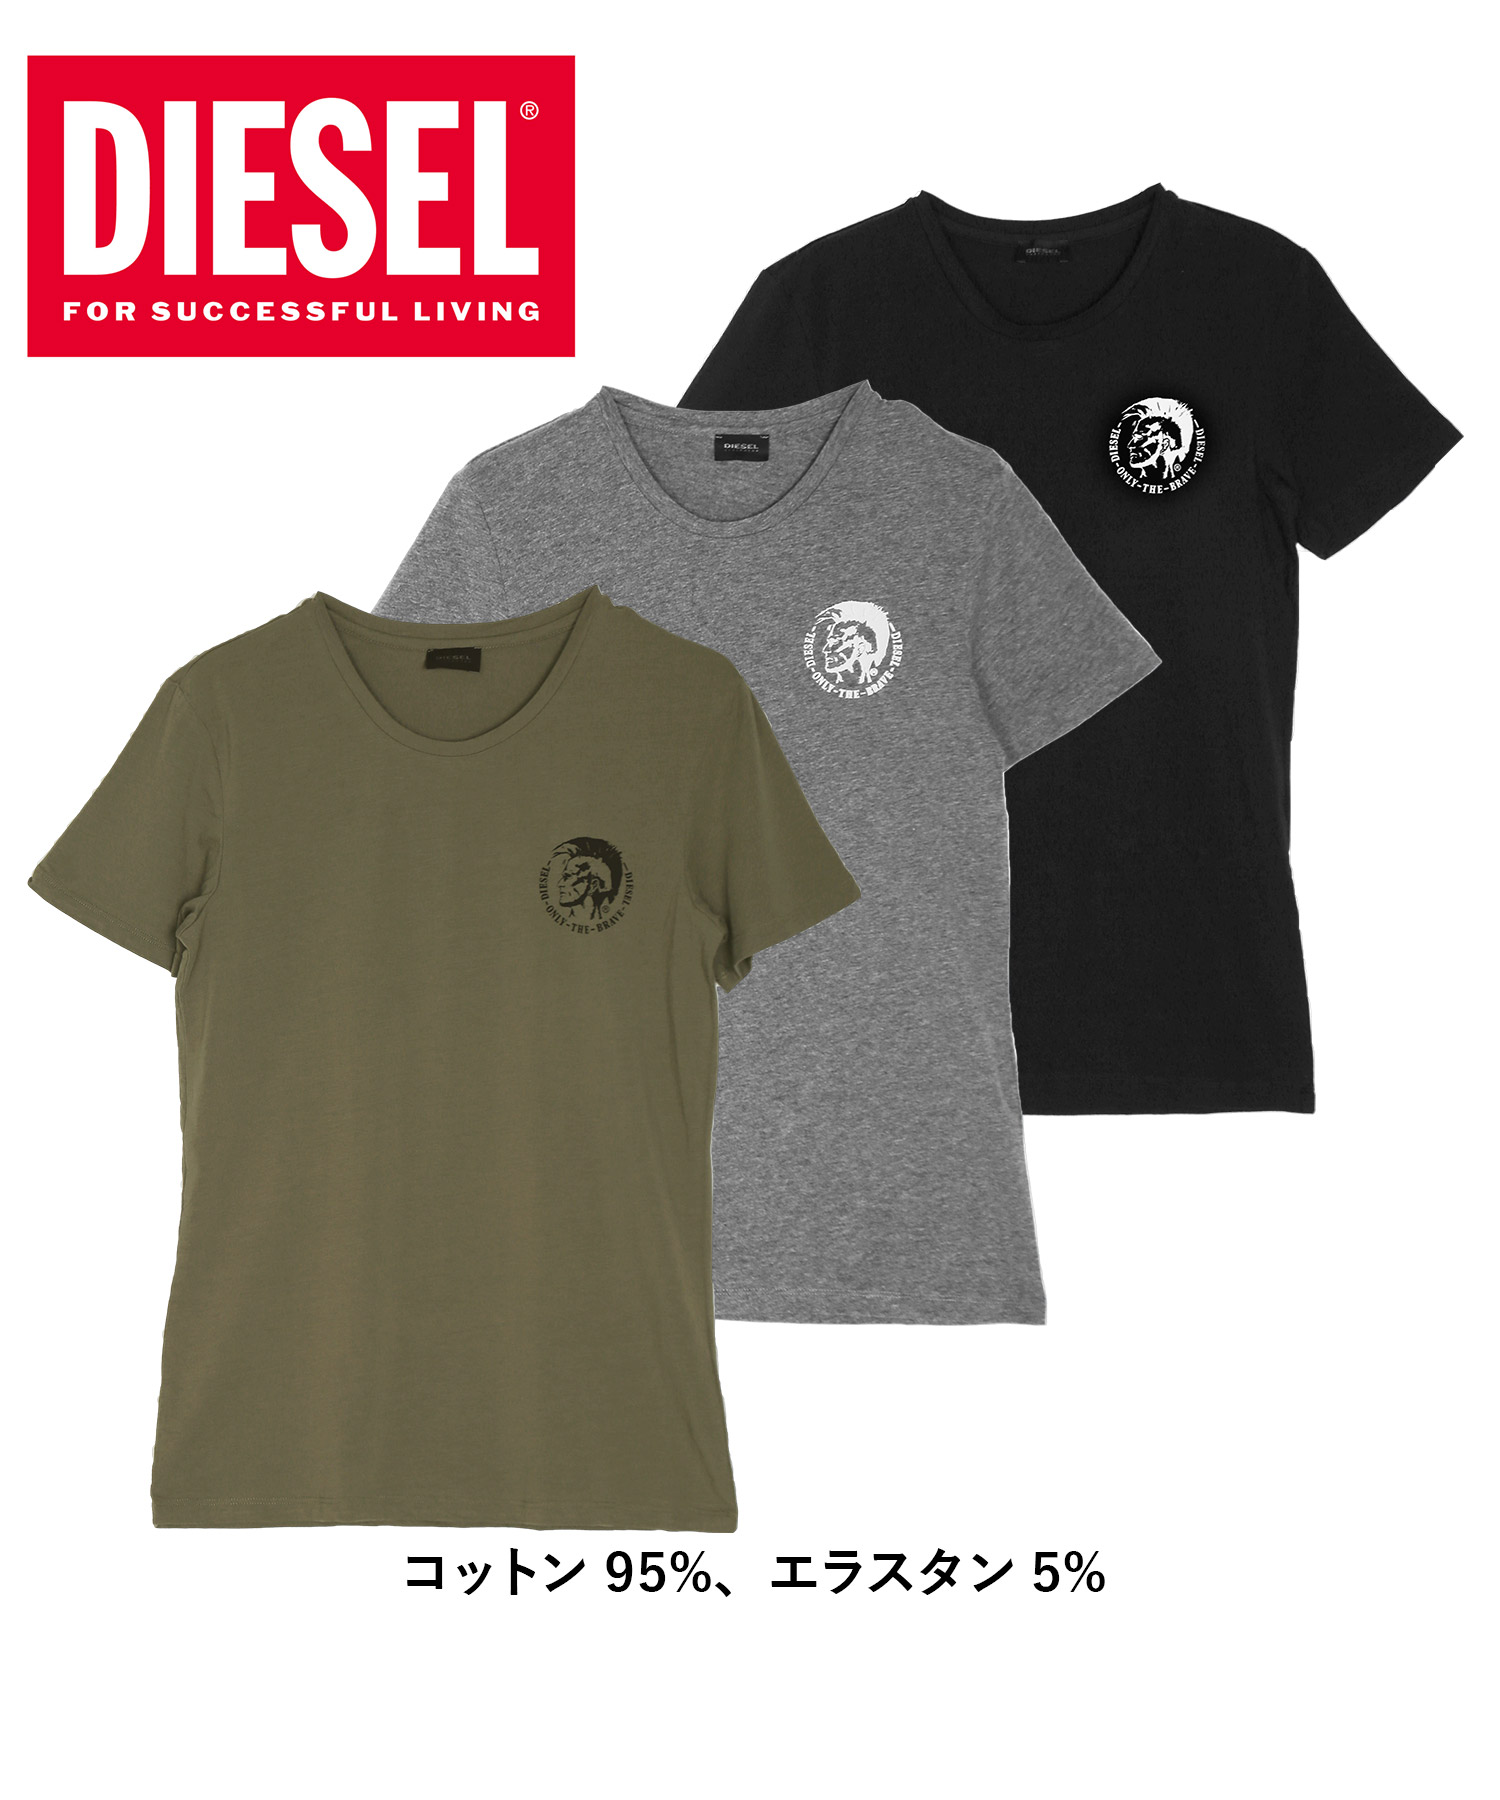 ディーゼル Tシャツ 3枚セット DIESEL メンズ 肌着 インナー 紳士 綿100% コットン おしゃれ かっこいい 大きいサイズ ロゴ 無地  ブランド ギフト 父の日